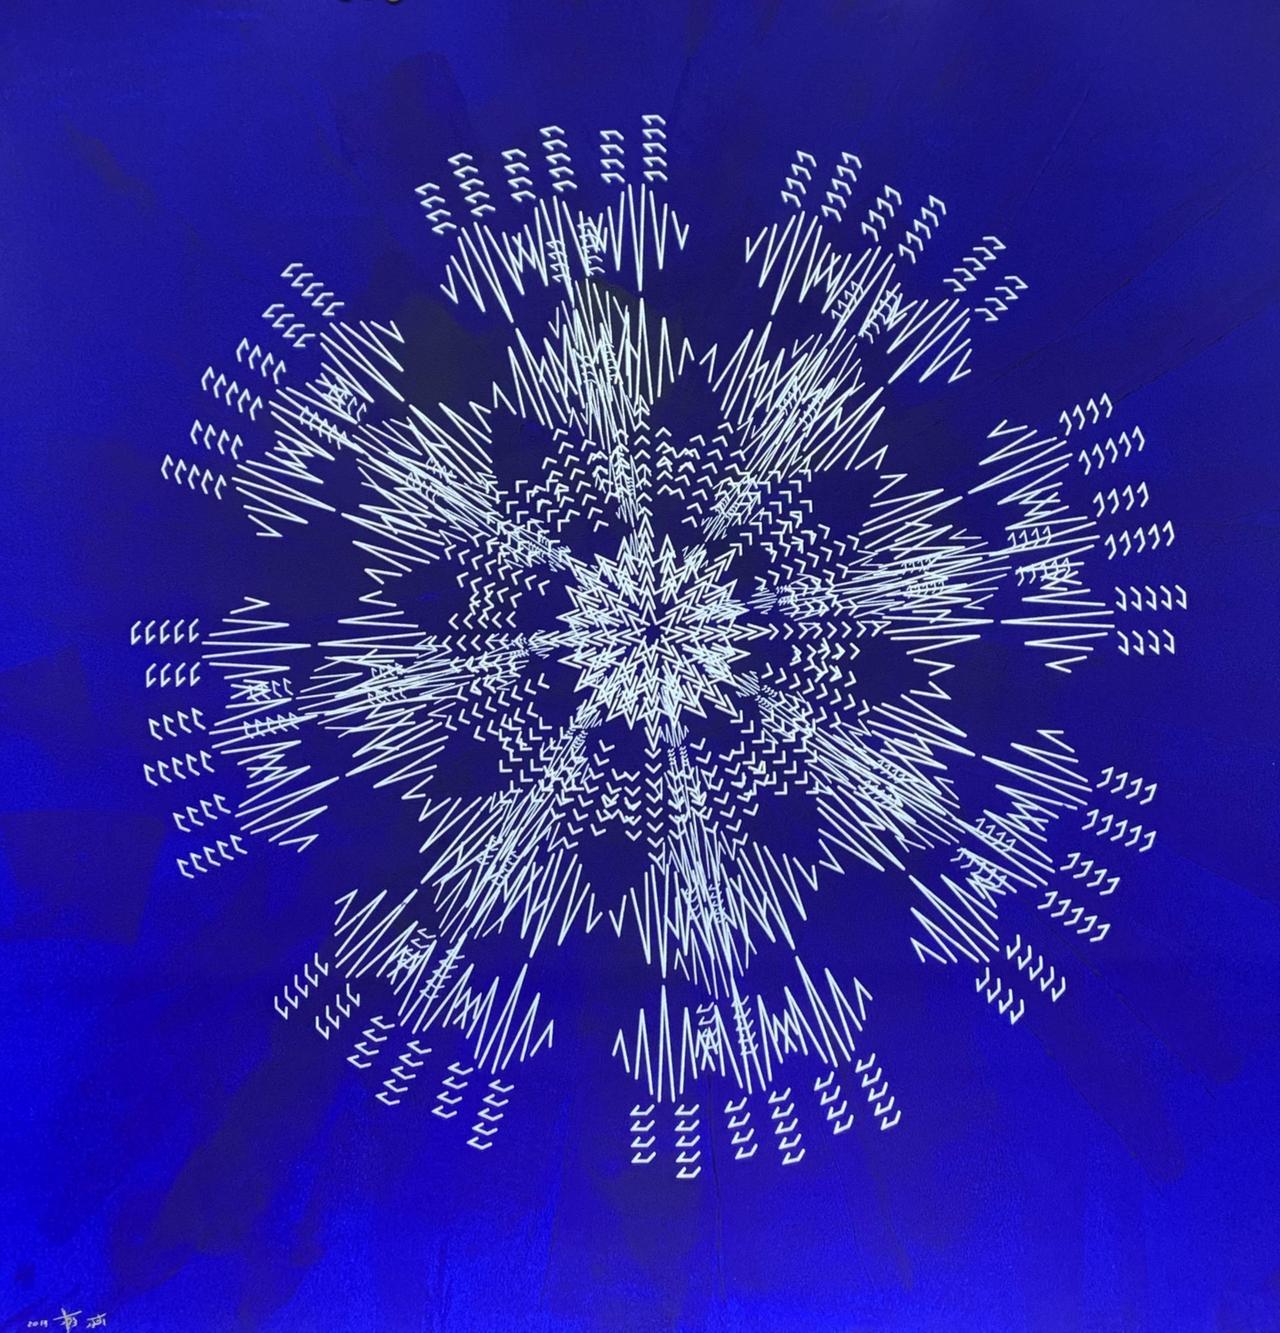 Das Kunstwerk Al-Shakoor von Lulwah al-Homoud, ein symmetrisches Muster auf blauem Grund